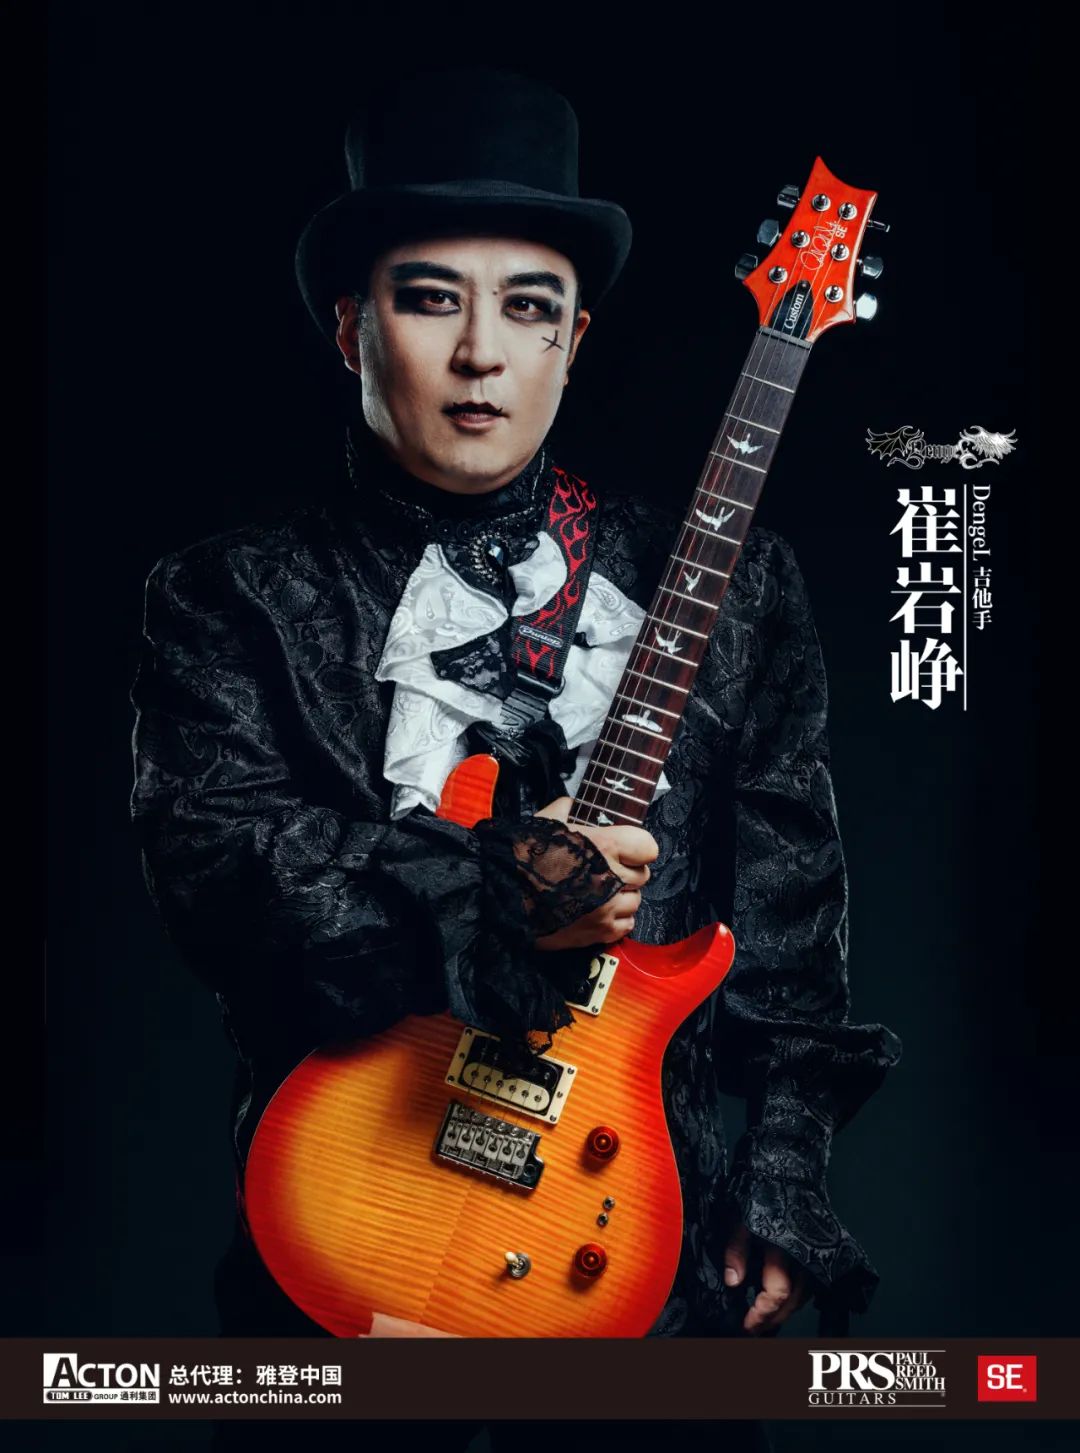 单舟DENGEL乐队吉它手刘柘、崔岩峥签约雅登中国成为国际著名电吉它品牌PRS推广大使